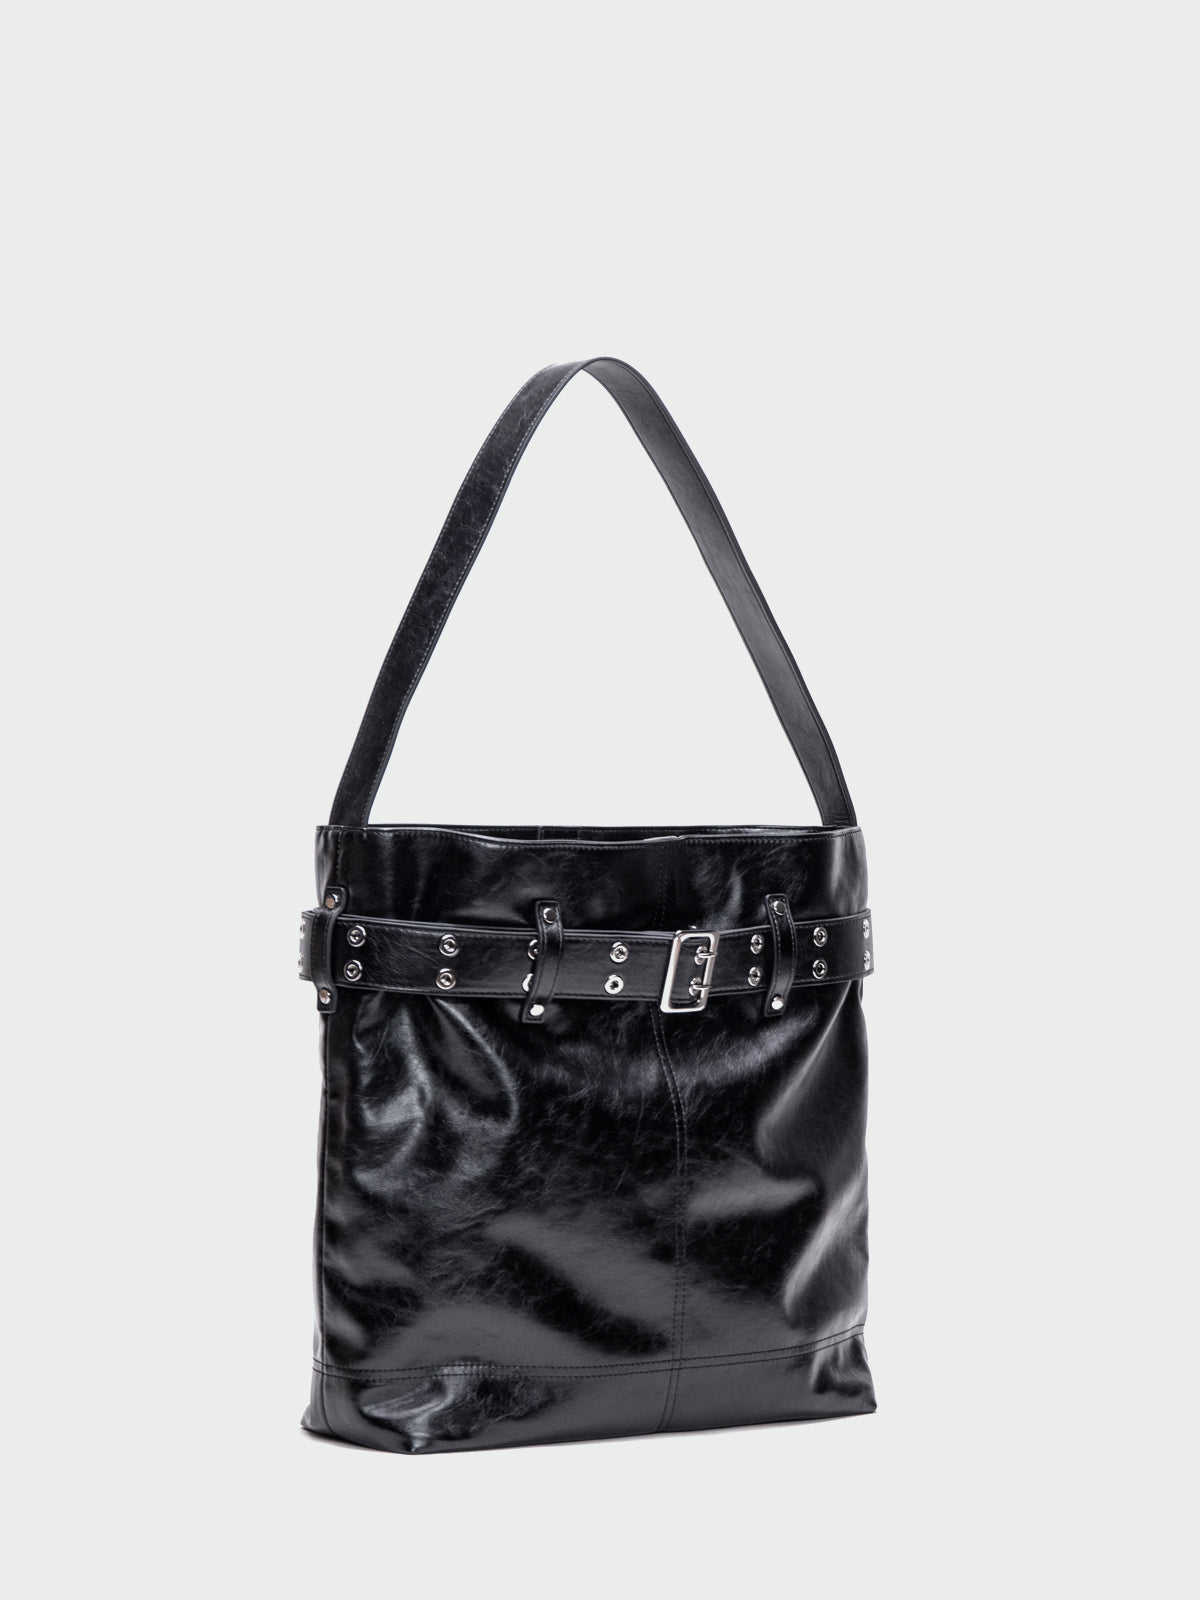 Black Strap Shoulder Bag